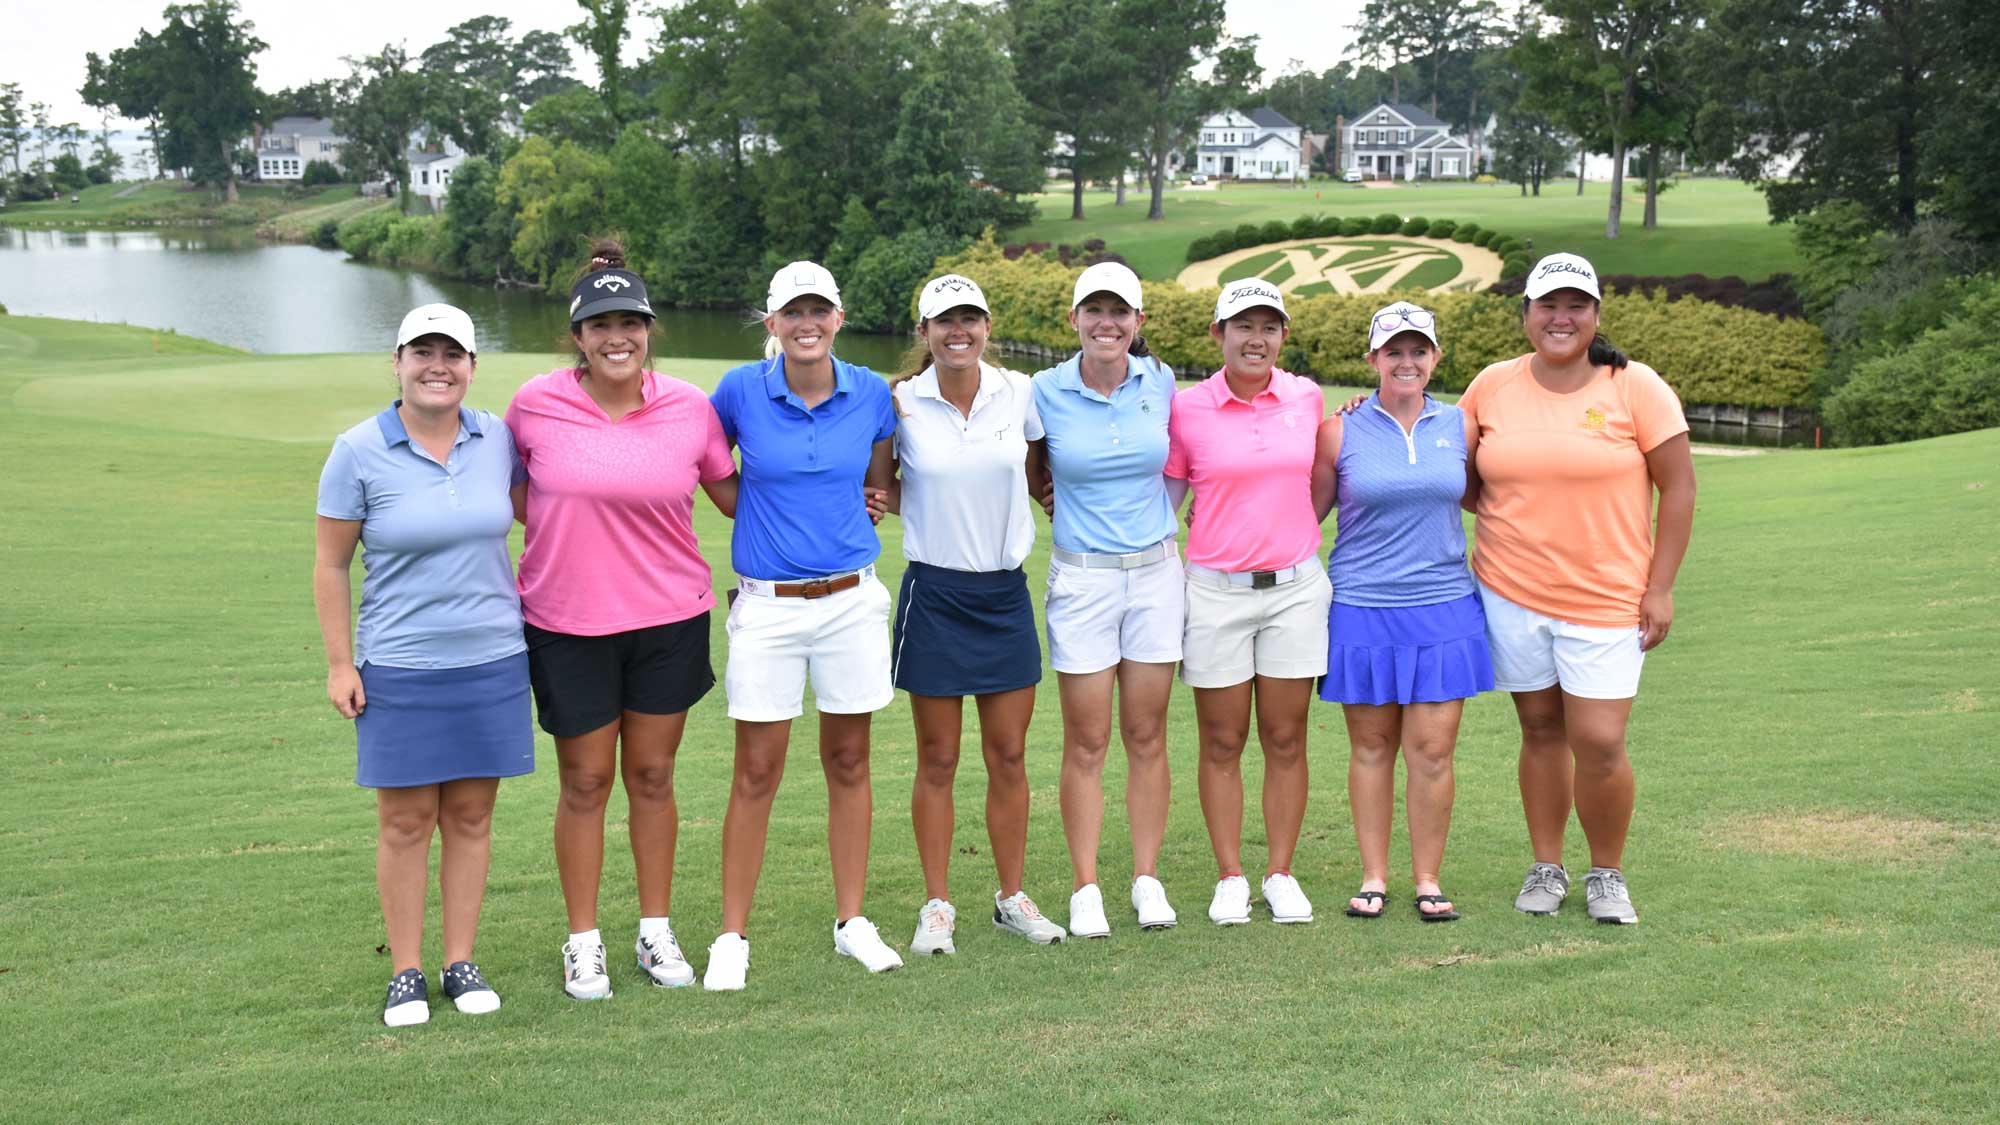 ladies golf pga tour